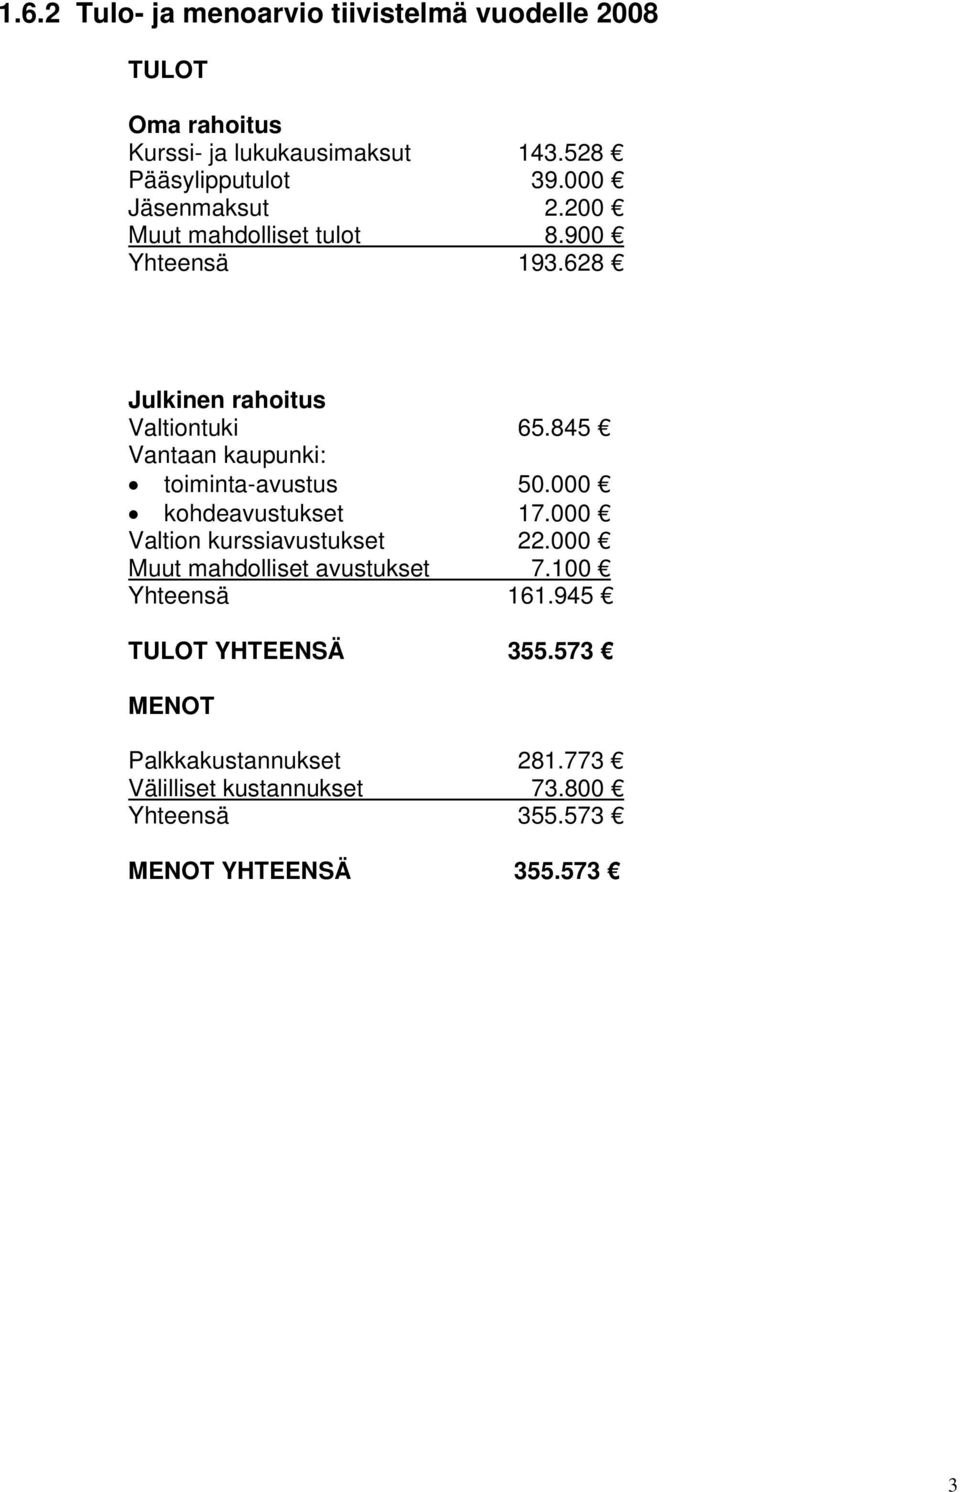 845 Vantaan kaupunki: toiminta-avustus 50.000 kohdeavustukset 17.000 Valtion kurssiavustukset 22.